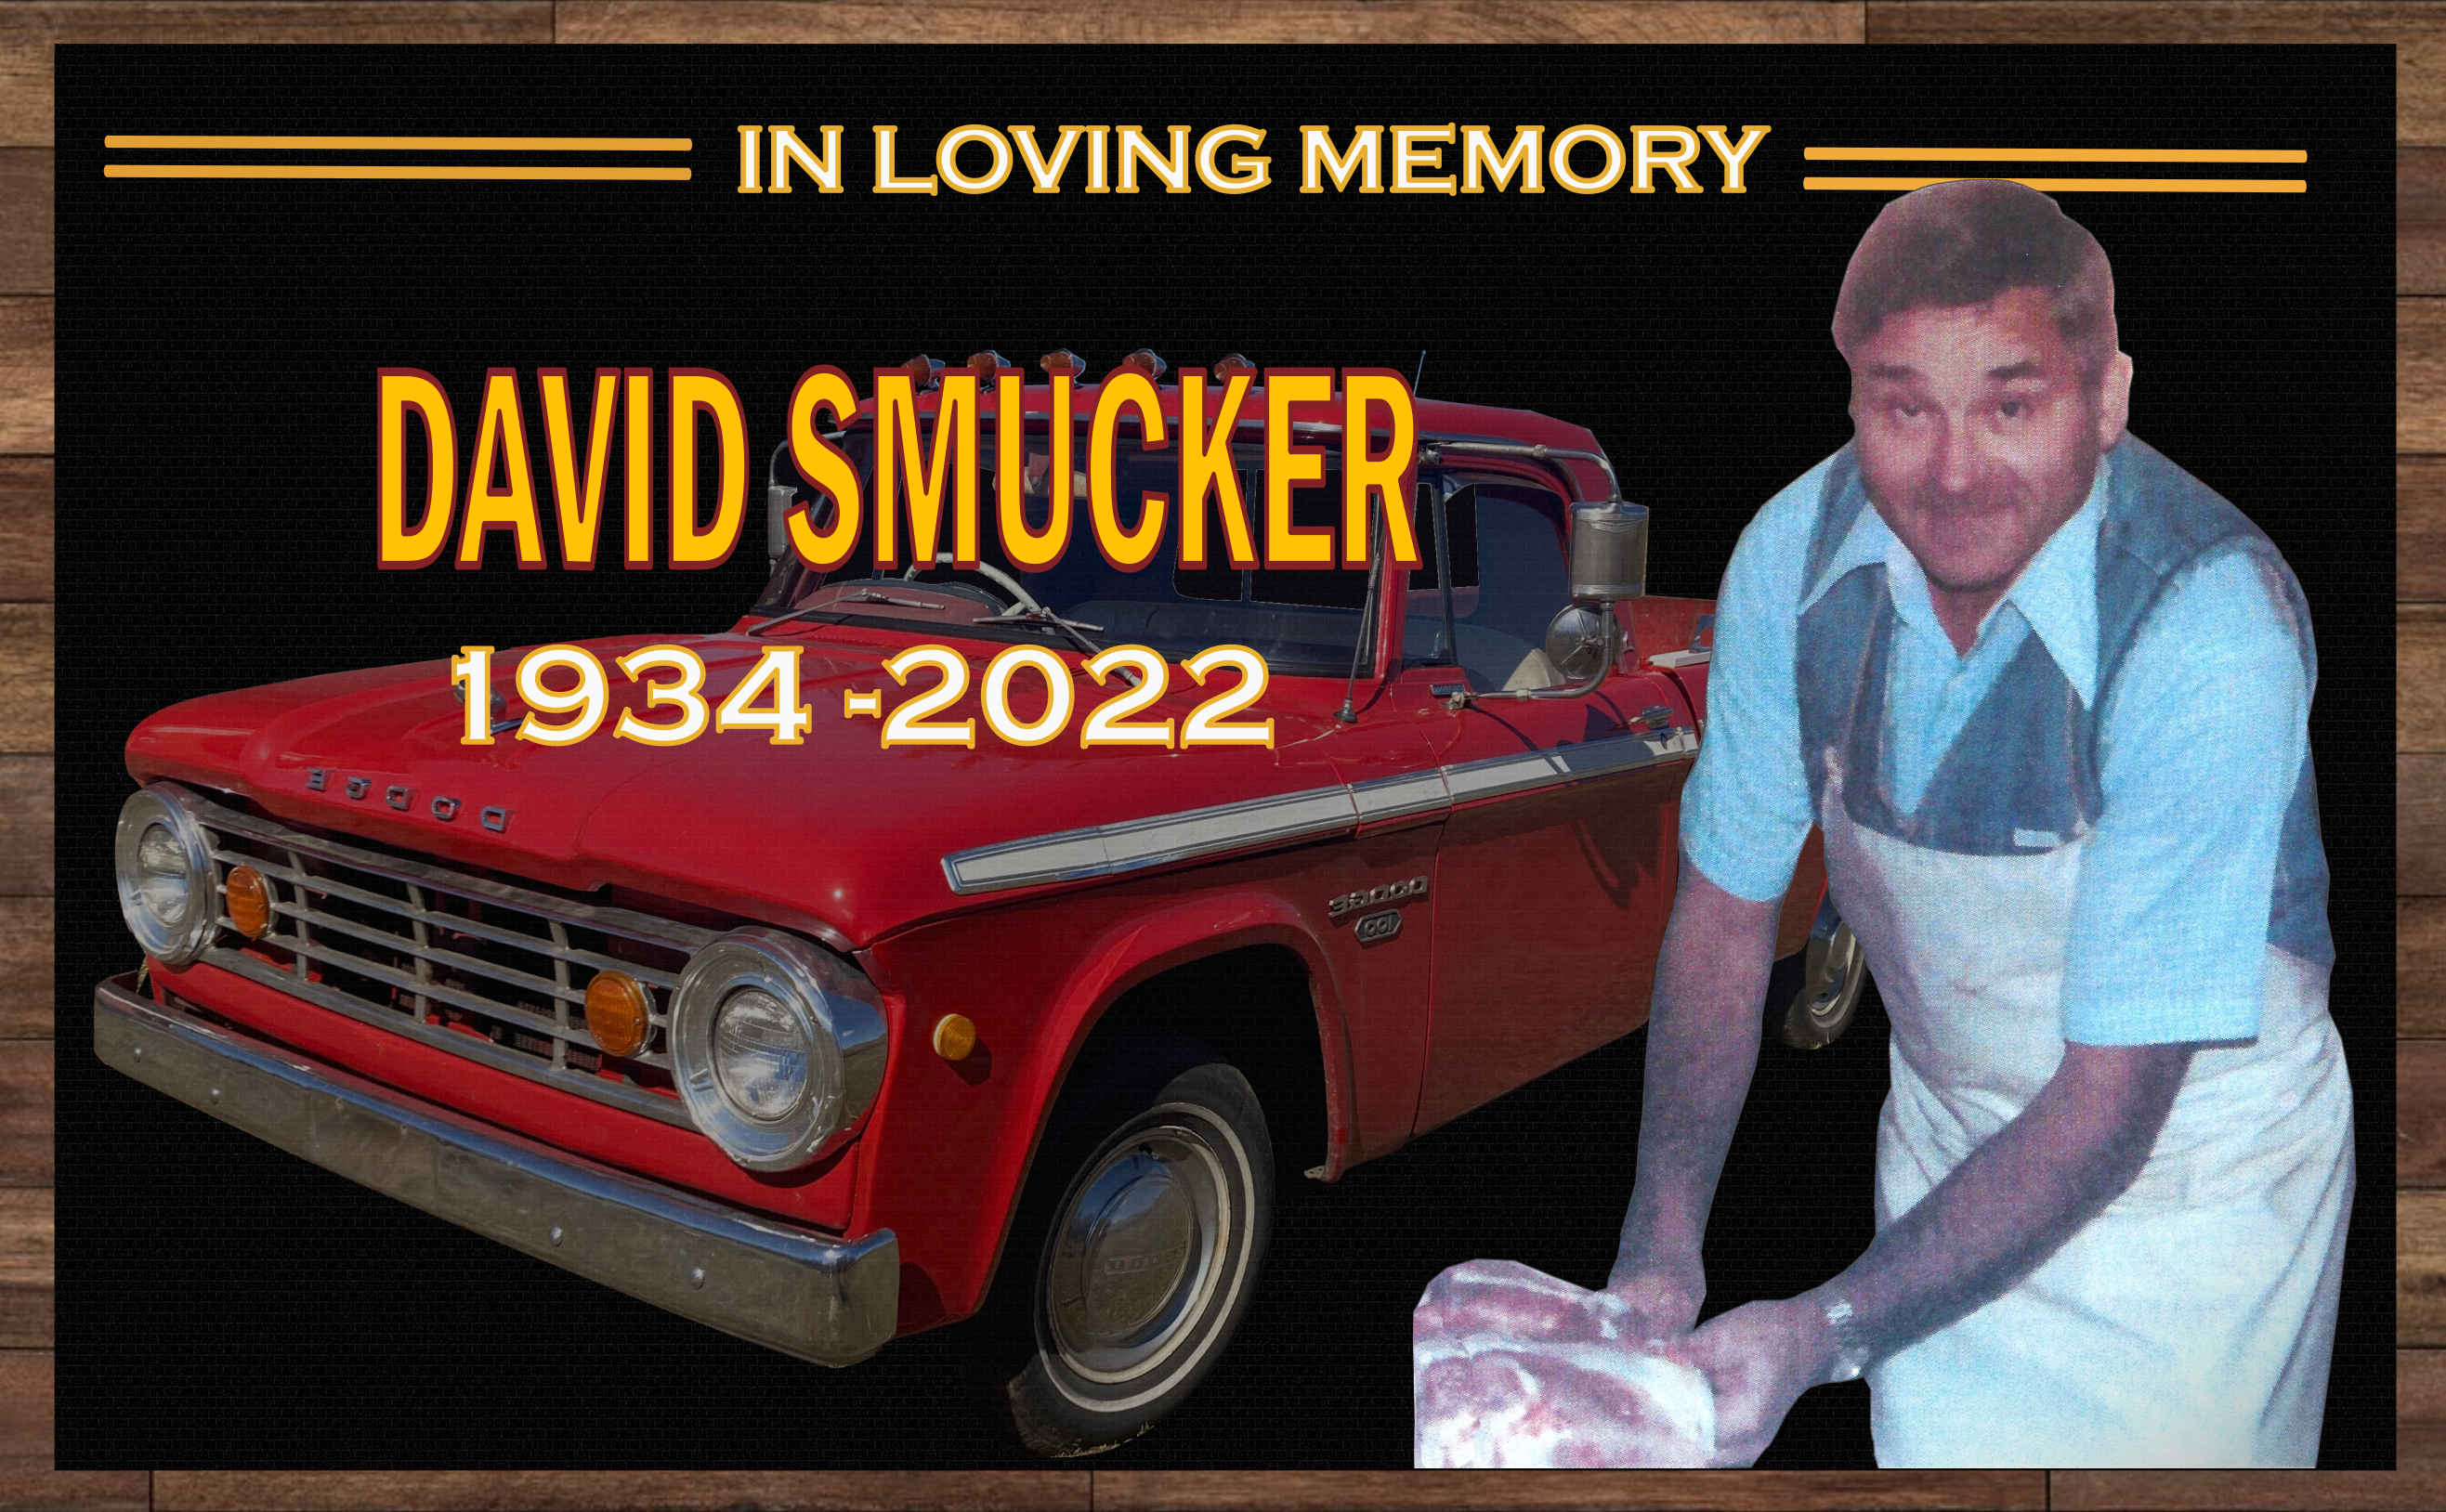 In Loving Memory of David Smucker